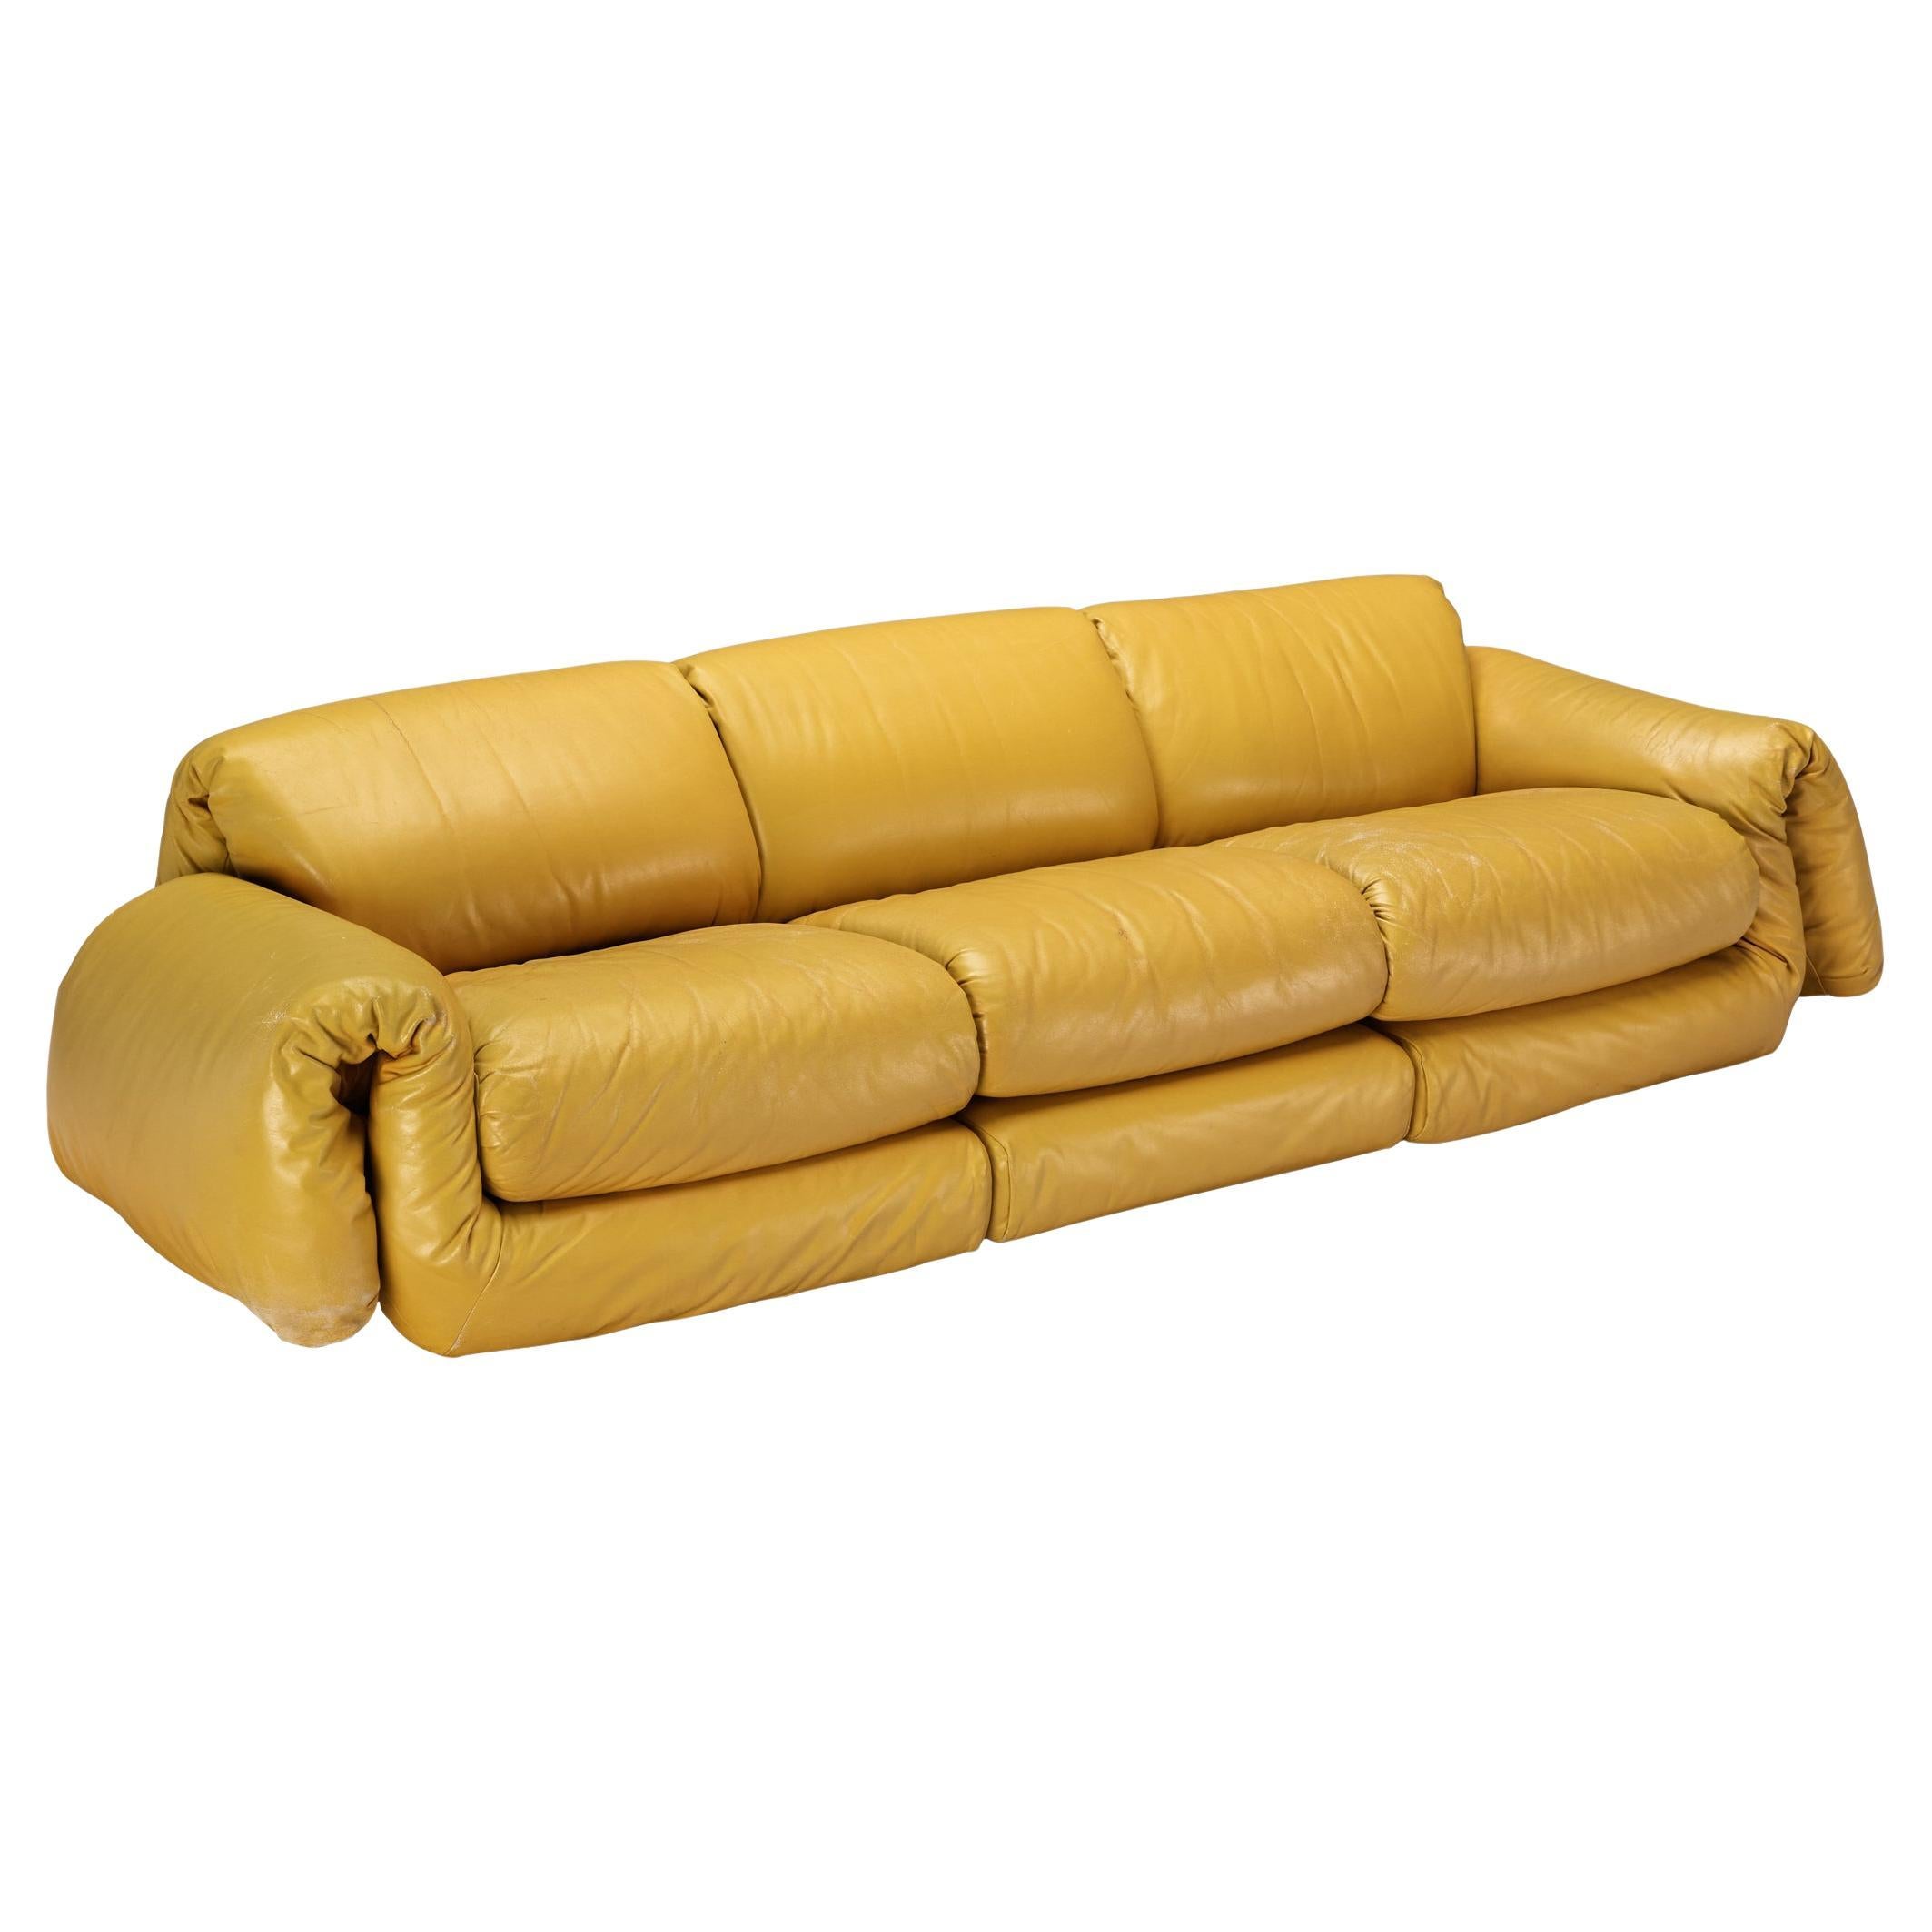 Dreisitziges, üppiges Sofa aus gelbem Leder 